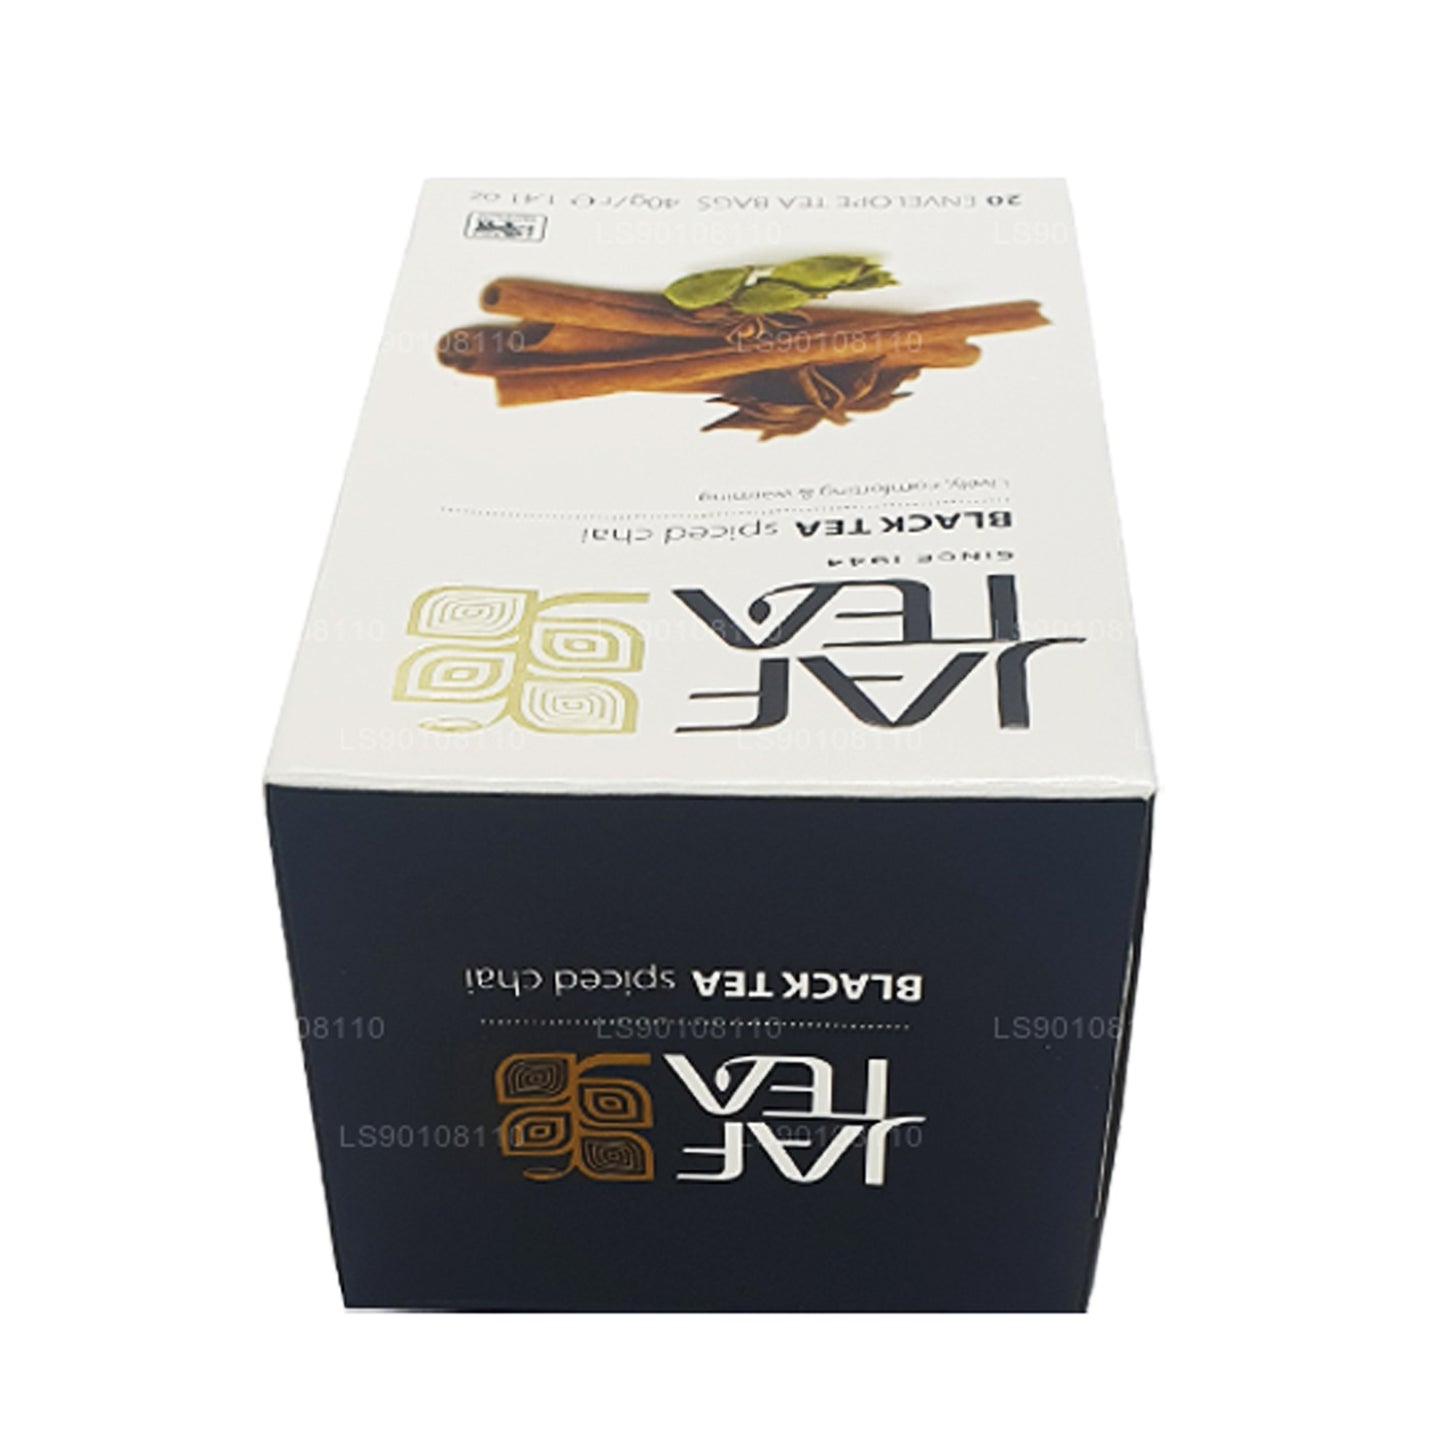 Thé noir épicé Jaf Tea Pure Spice Collection (40 g) 20 sachets de thé